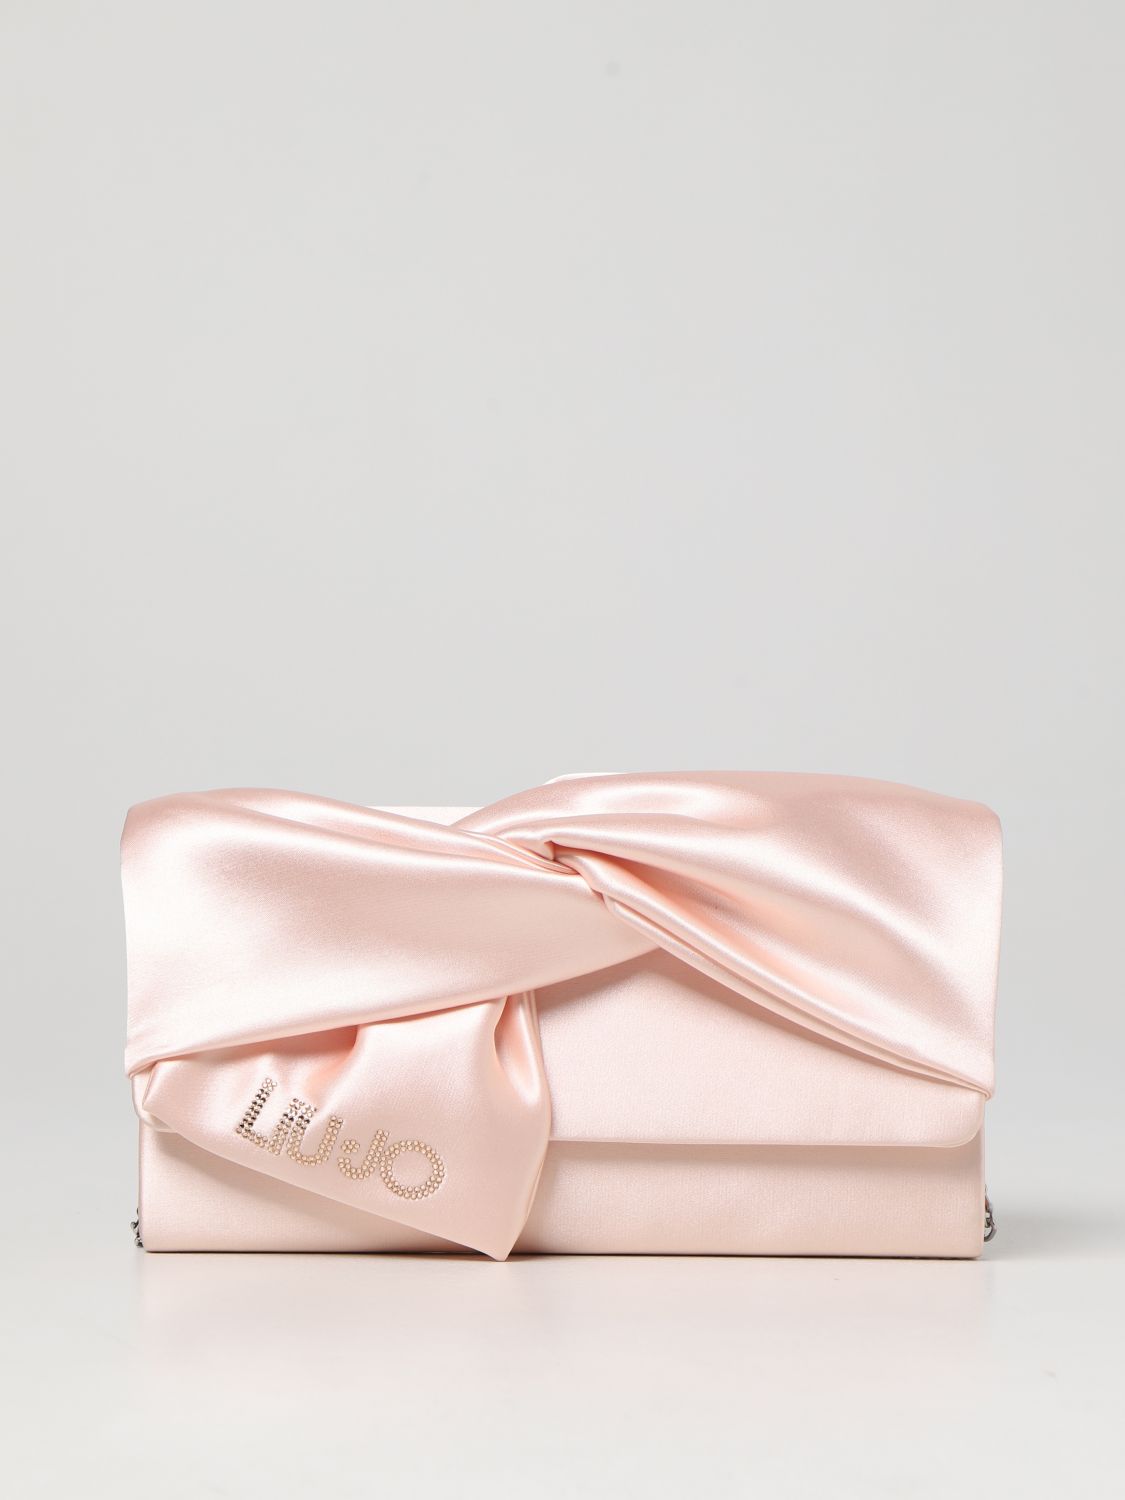 Liu •jo Fabric Bag In Pink